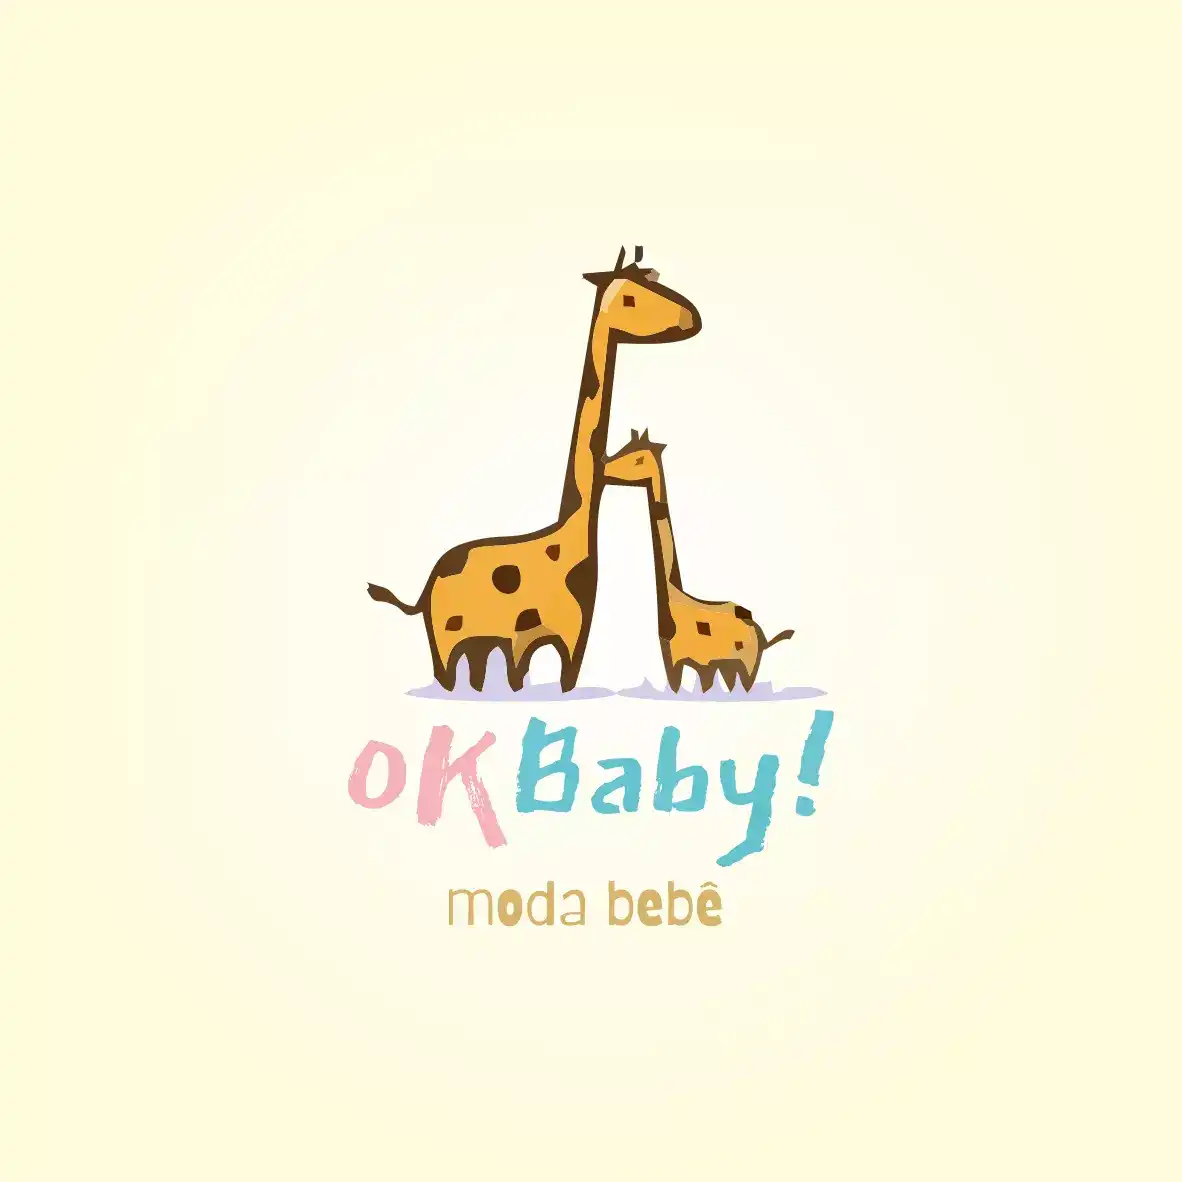 
Logo Logotipo Logomarca Roupas Moda Bebê



